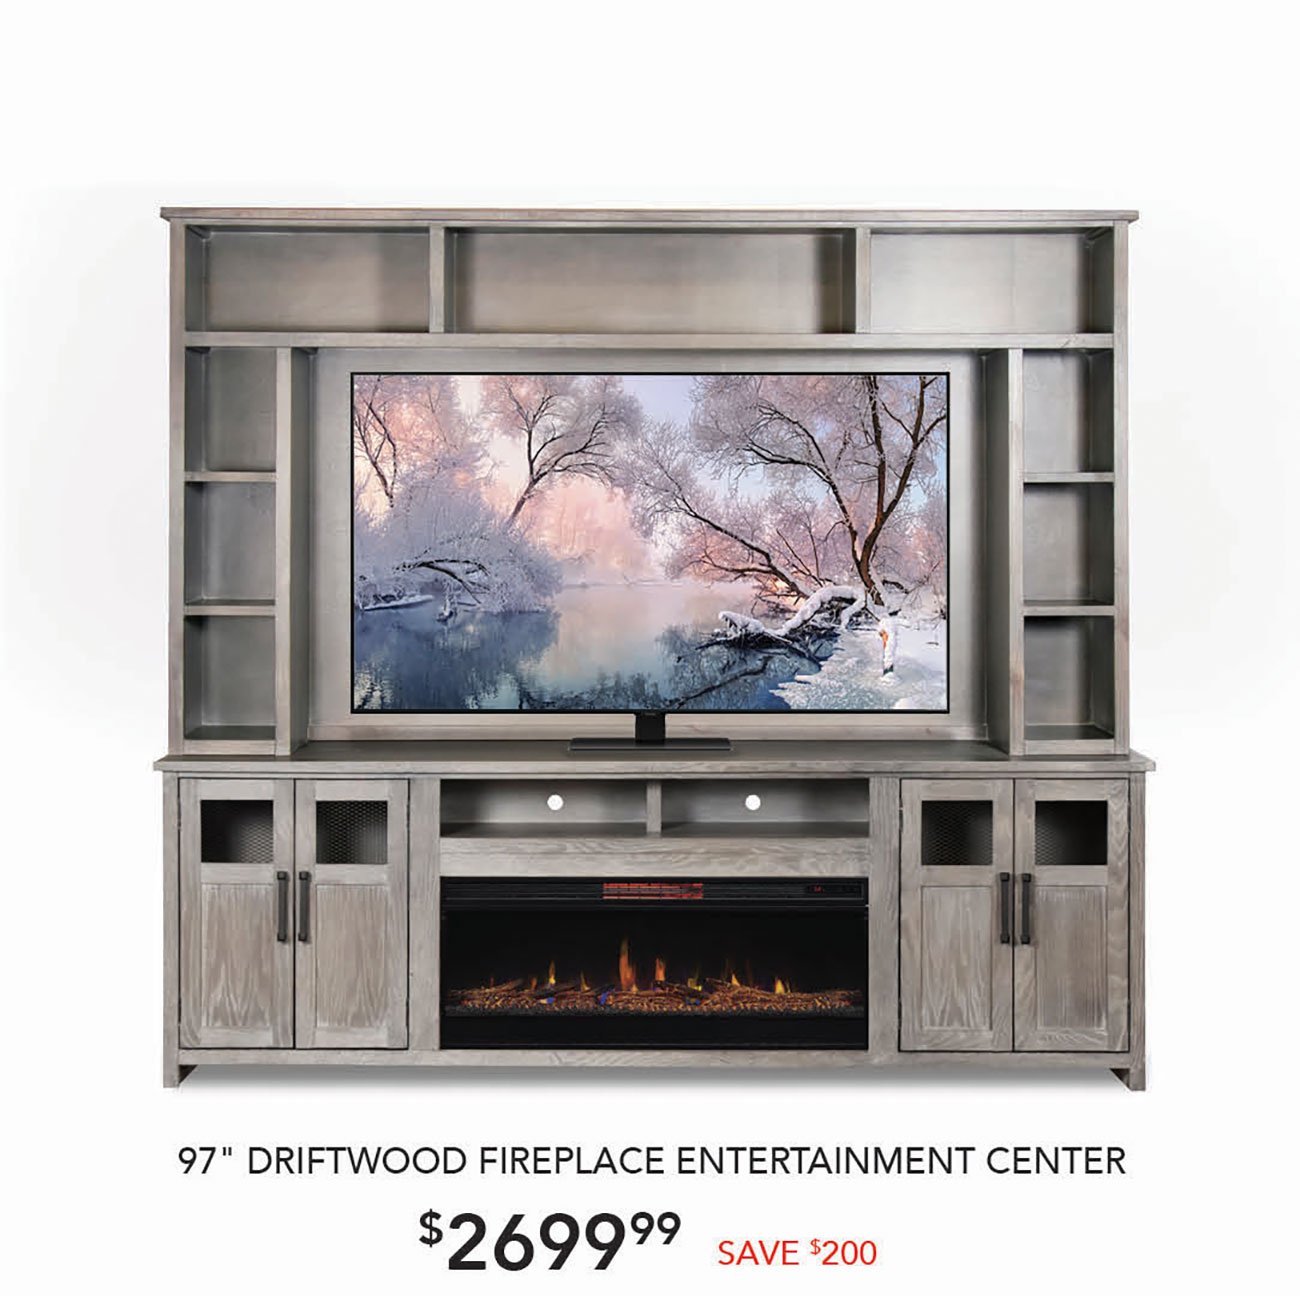 Driftwood-Fireplace-Entertainment-Center